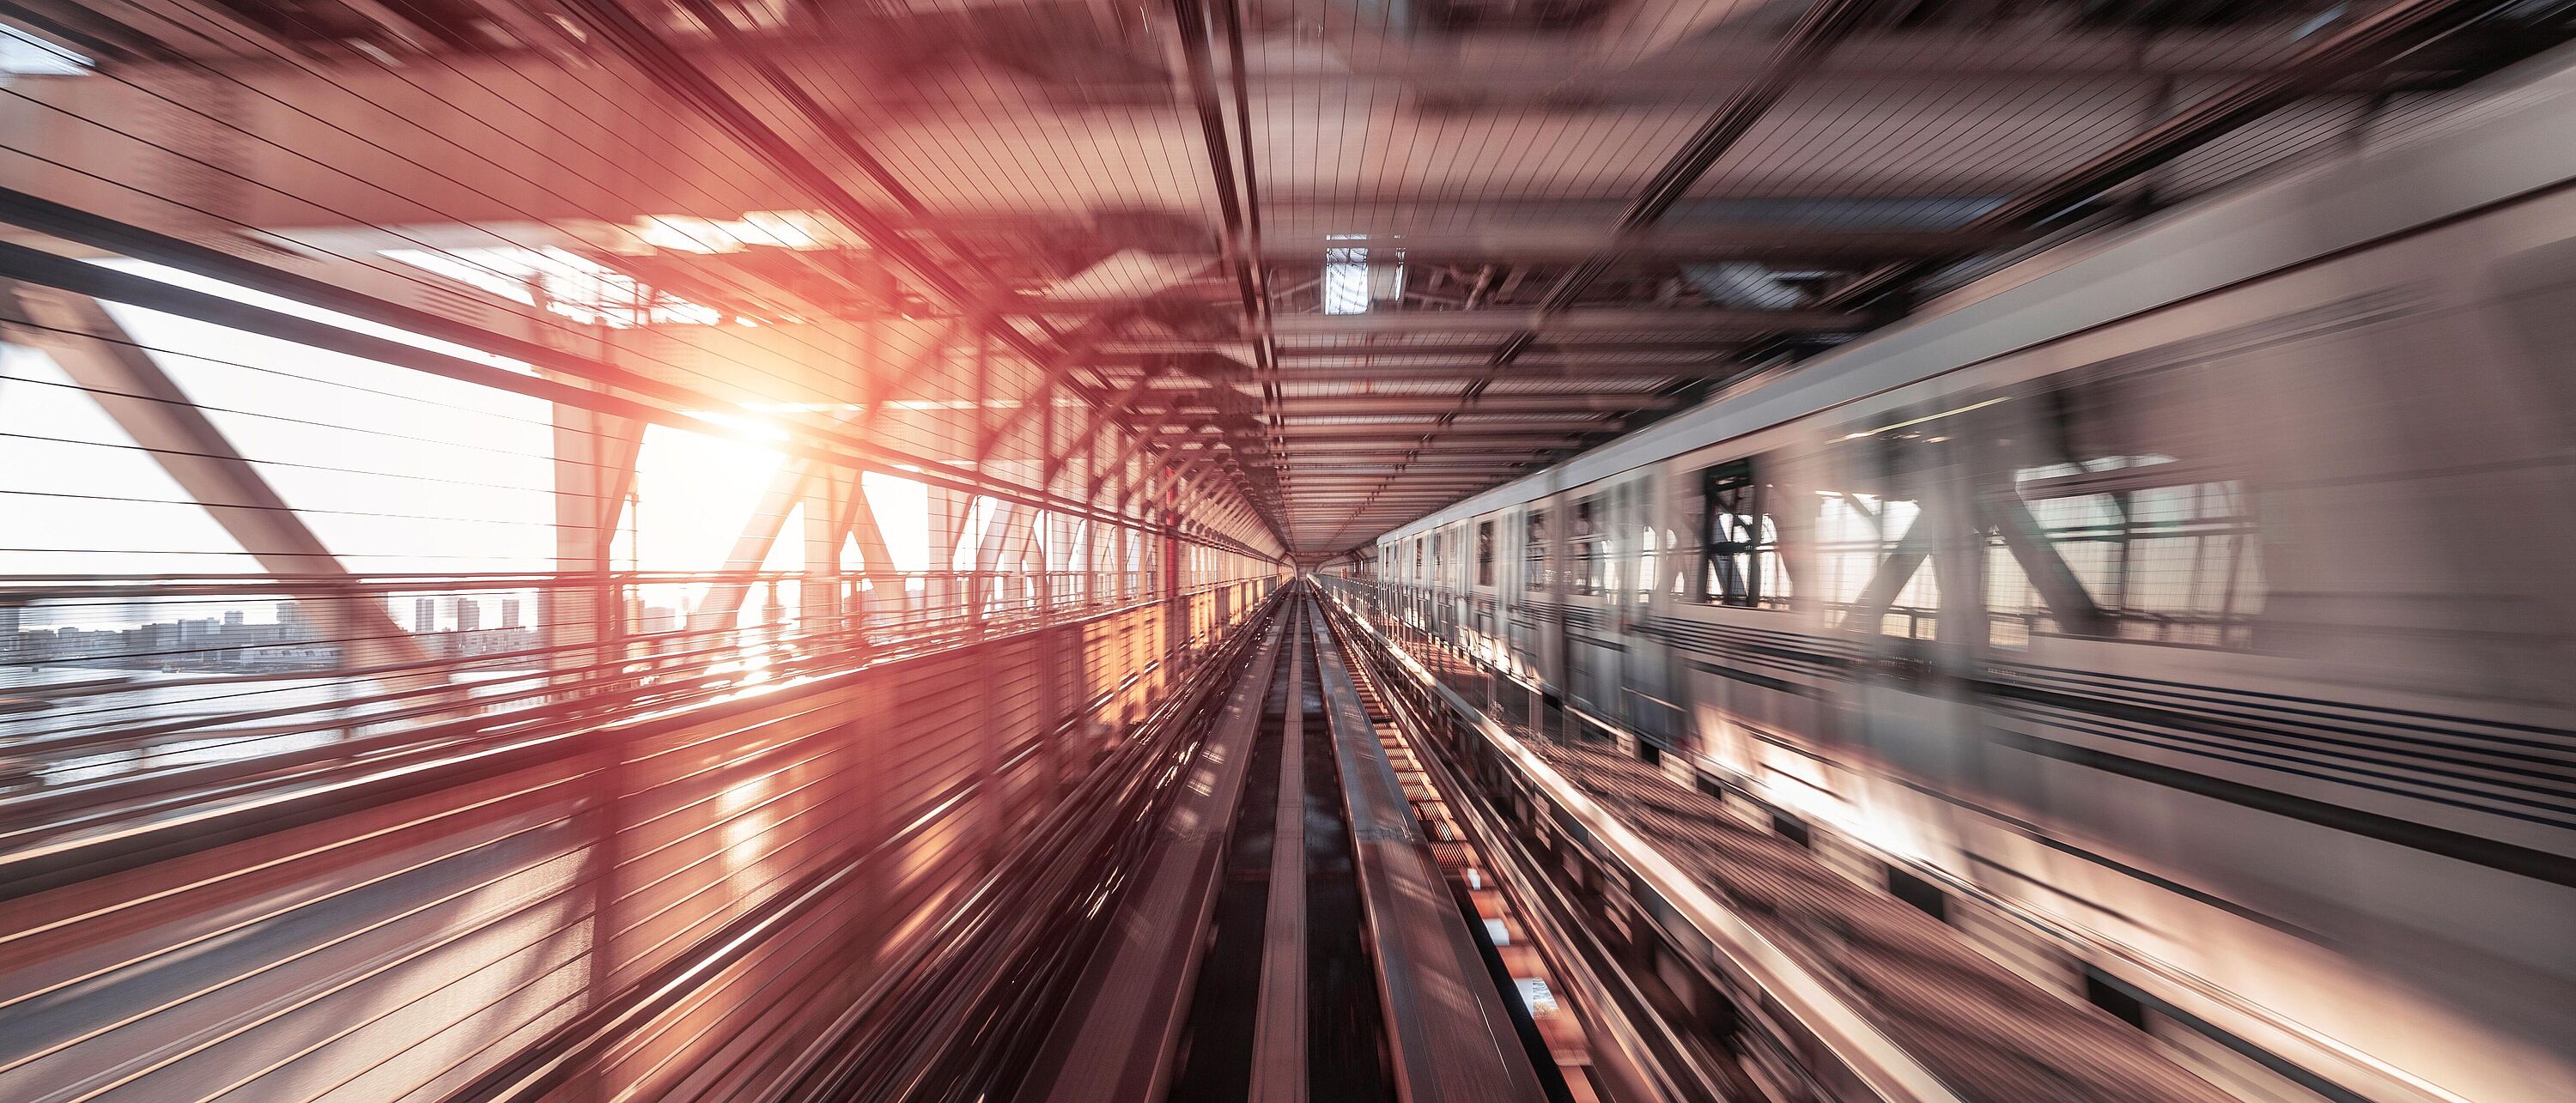 Foto mit Motion Blur Effekt eines Zuges welches über eine Stahlbrücke fährt.